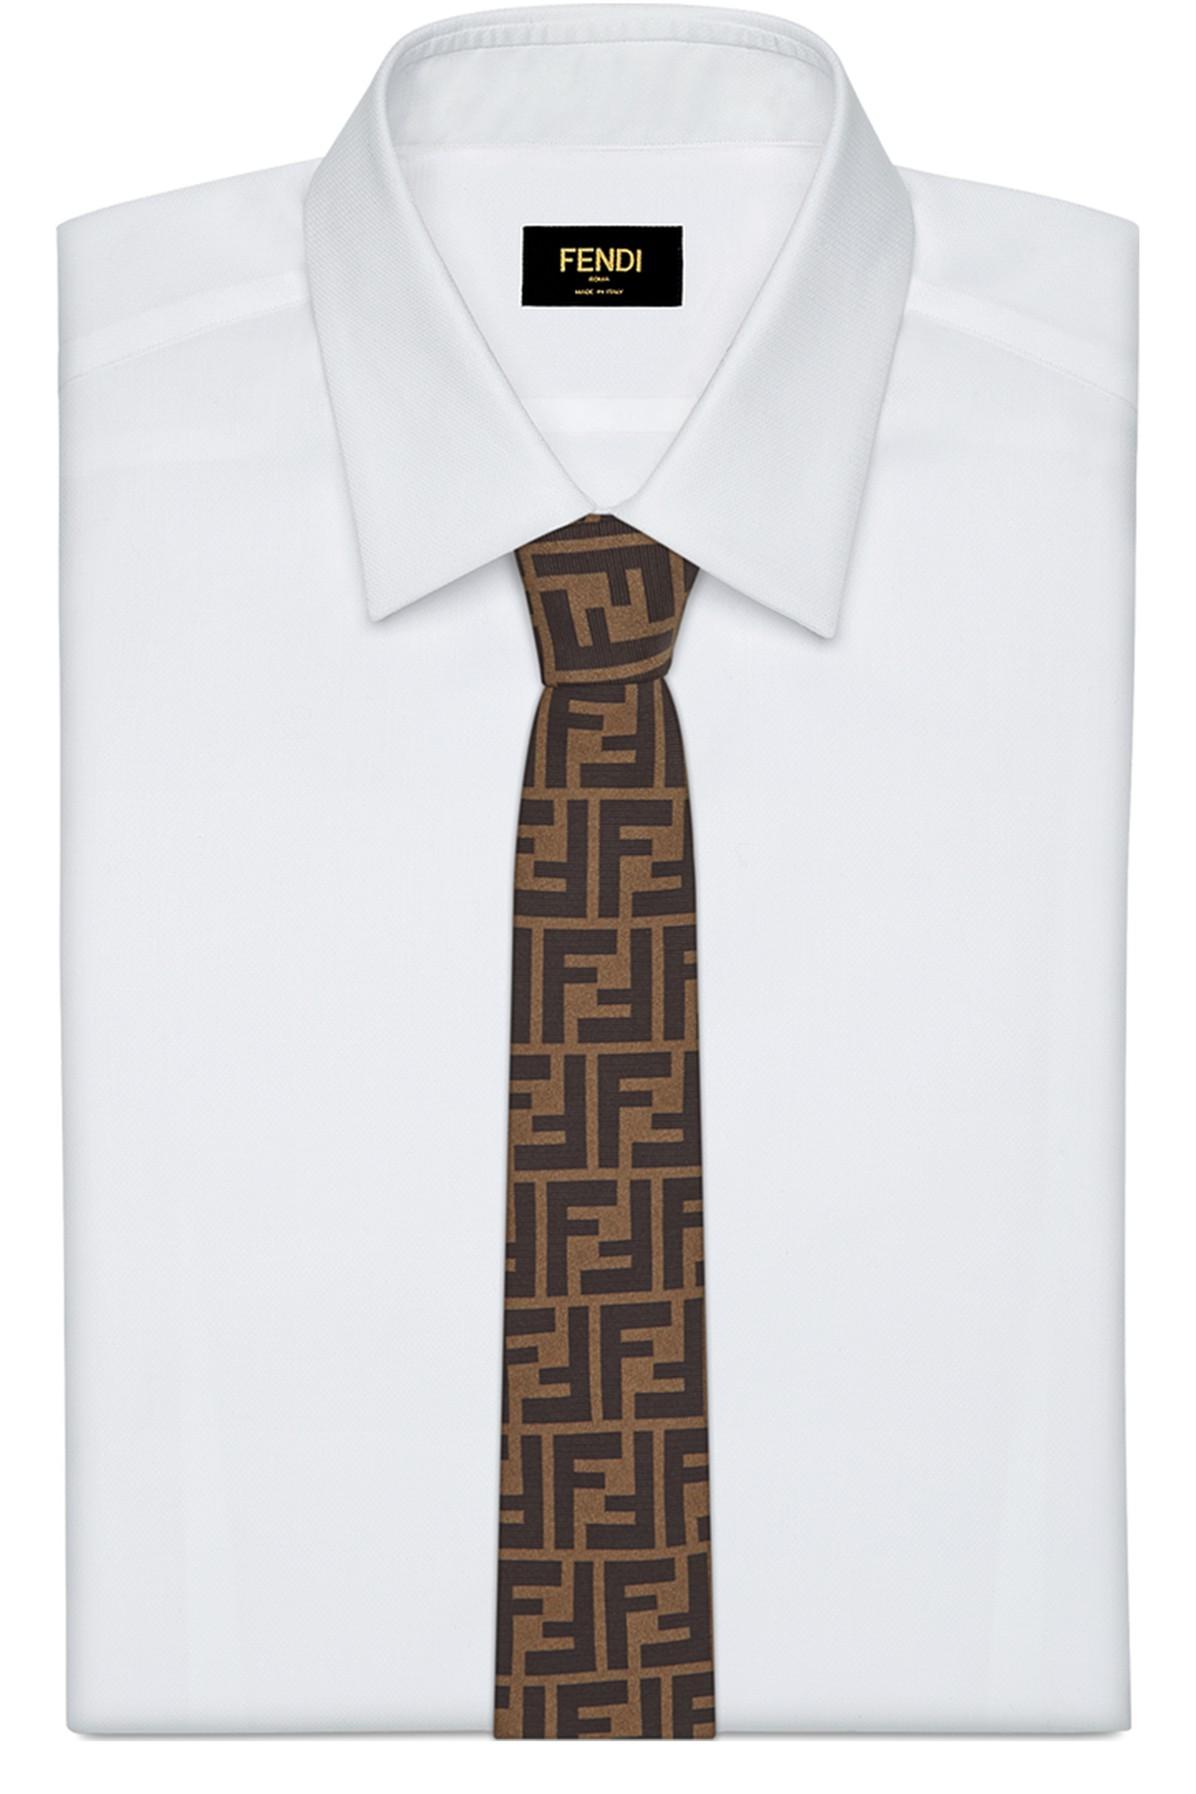 Fendi Tie in Brown/ Black (Brown) for Men - Lyst